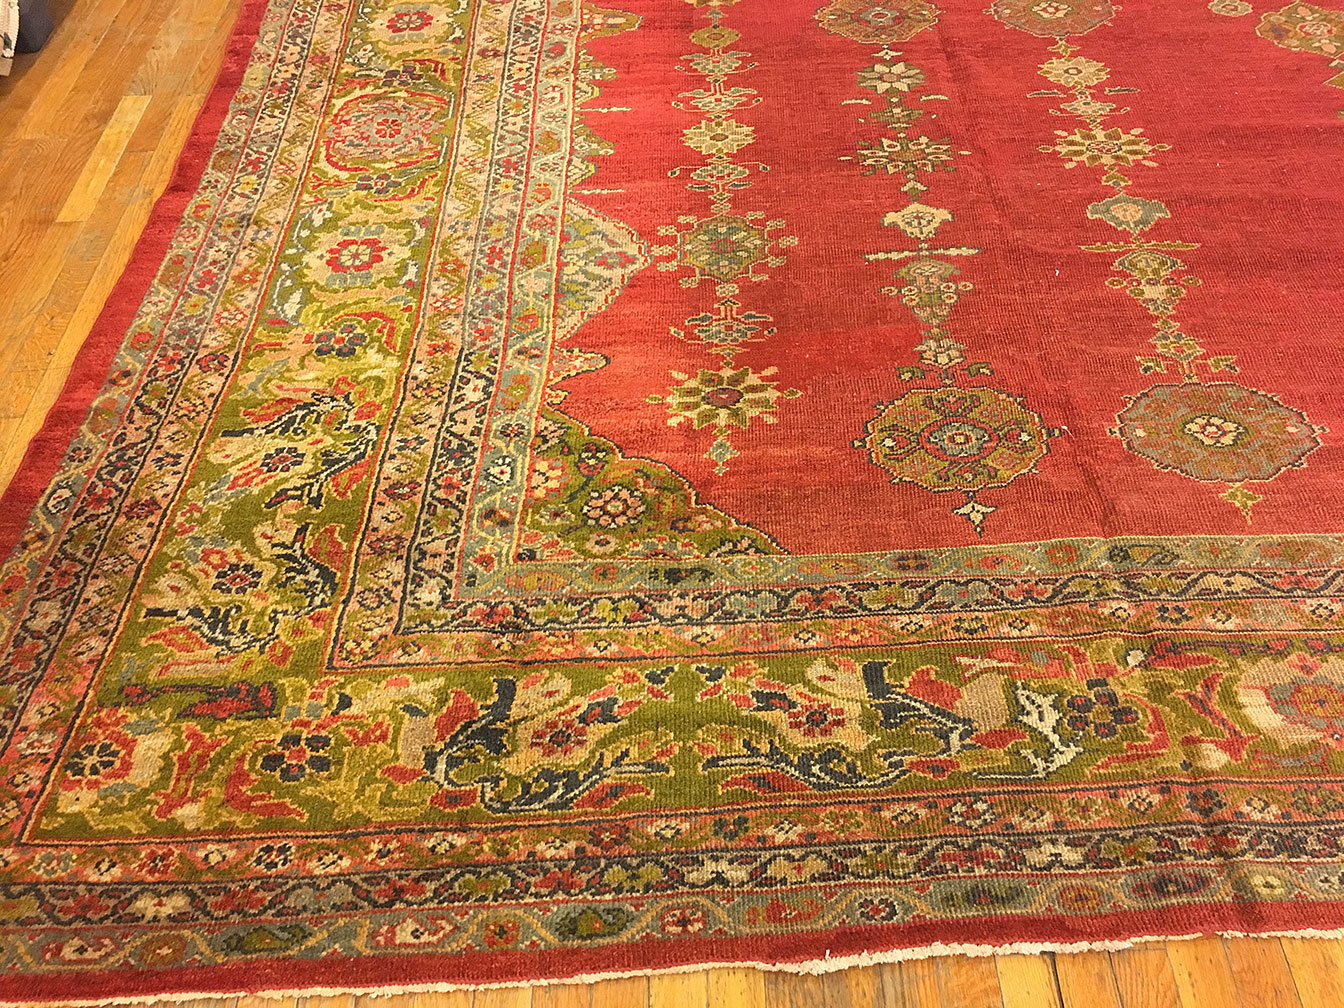 Antique sultan abad Carpet - # 52049